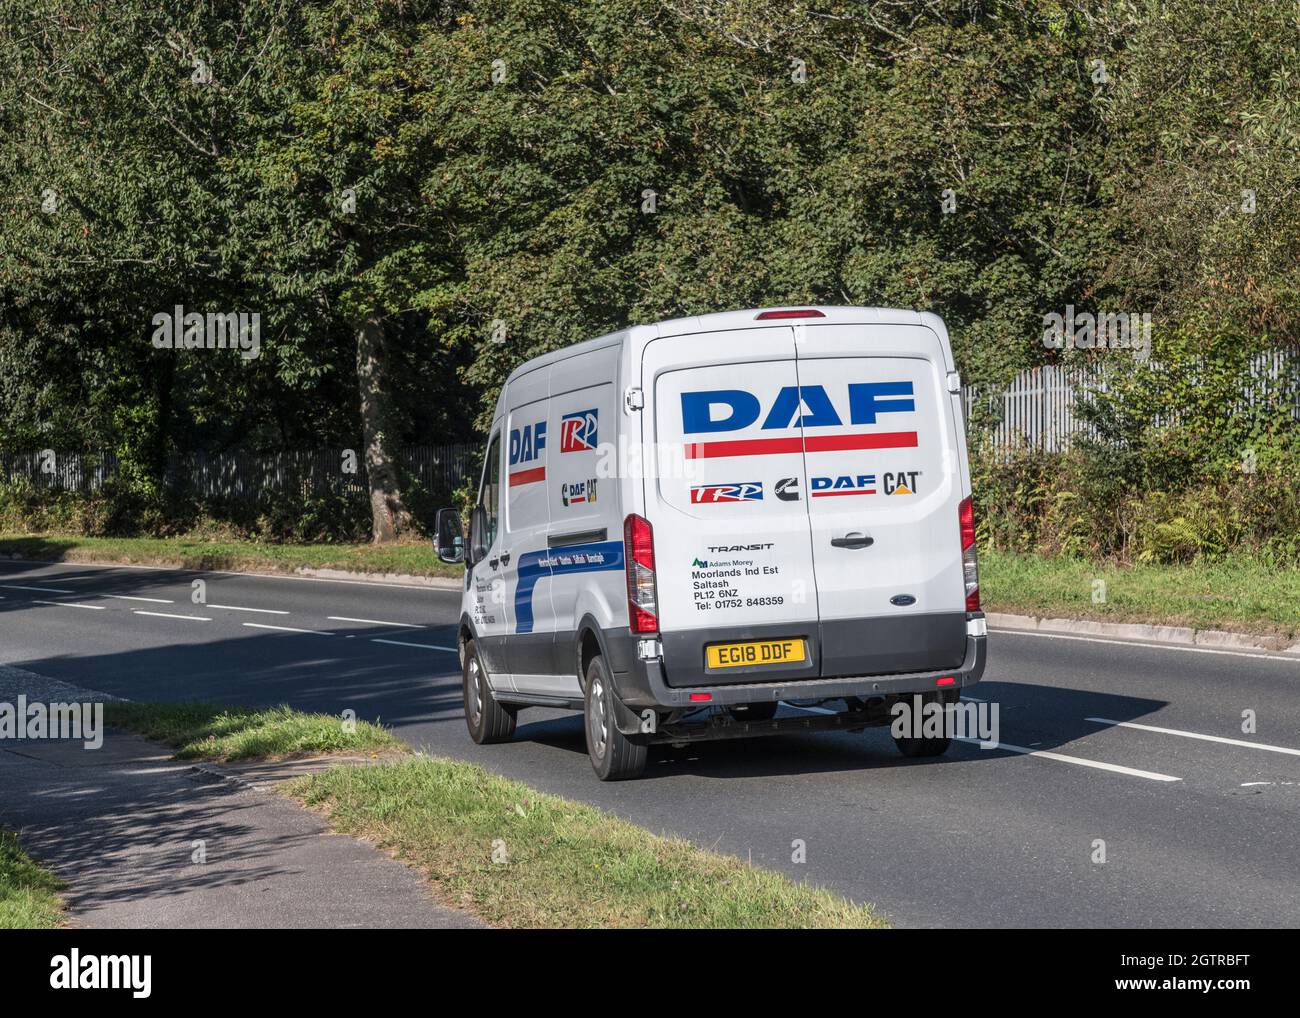 Lieferwagen für DAF & Cat-Ersatzteile, der auf Landstraße bergab fährt. Für UK Fahrer Mangel, Auto-Ersatzteile Lieferung während Covid, UK Transport, Ford Vans. Stockfoto